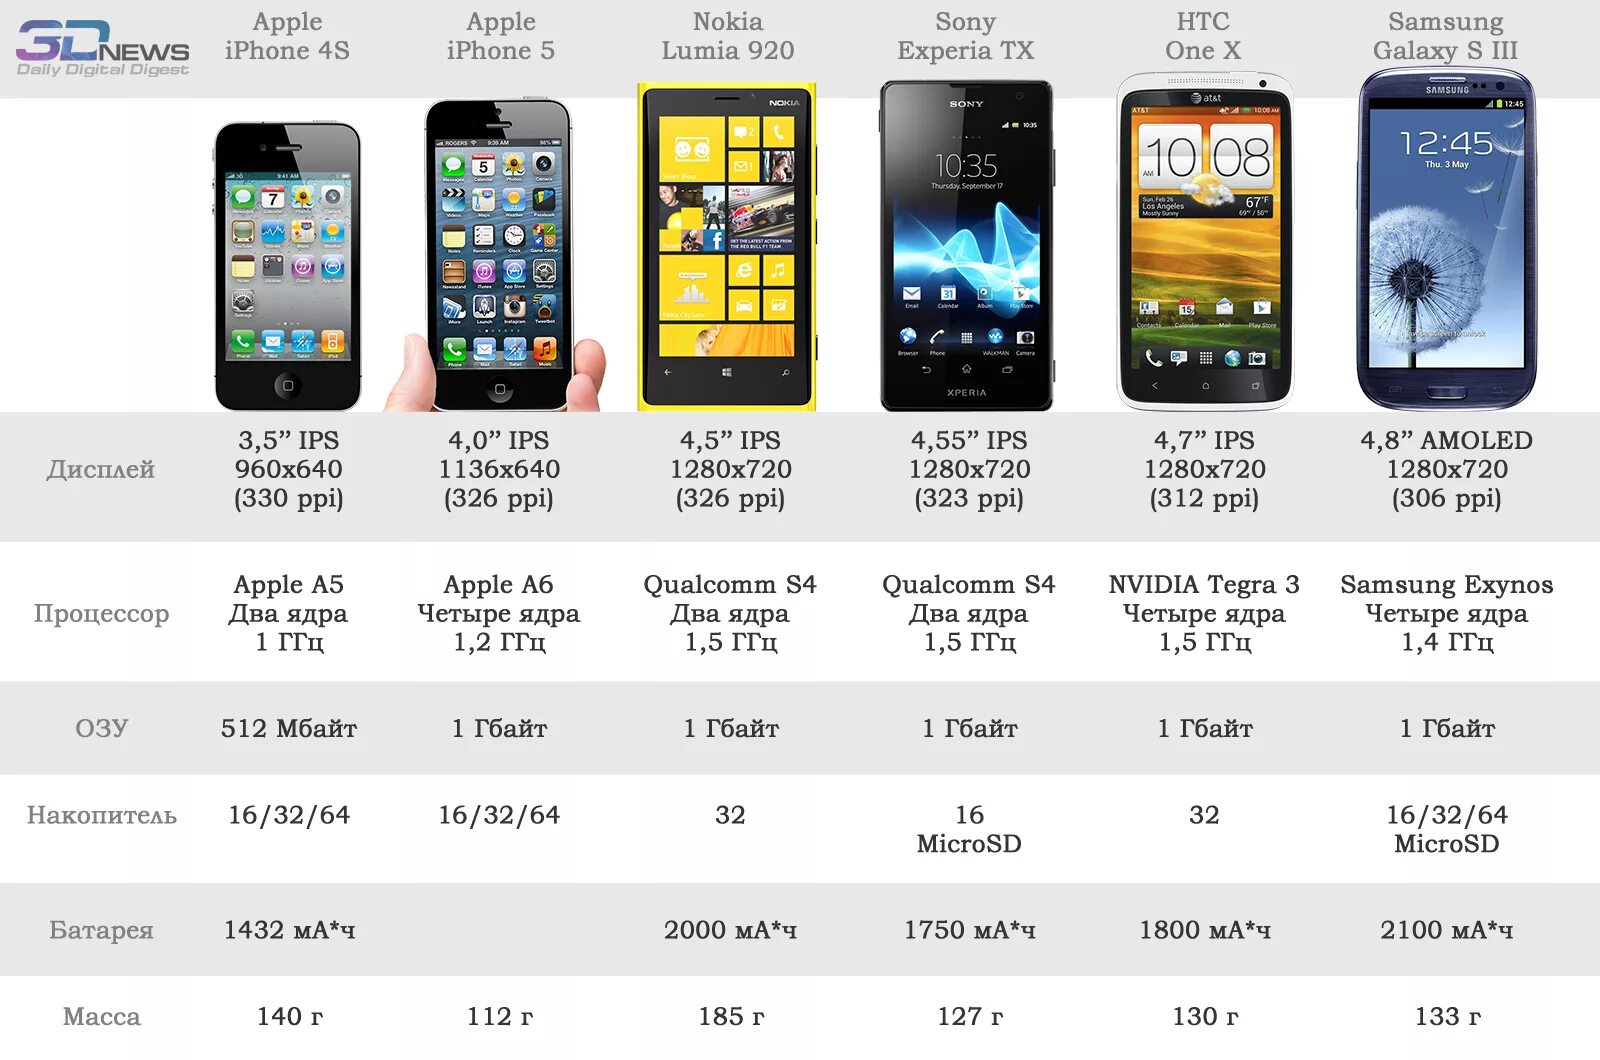 Экран телефона название. Iphone 5 характеристики моделей. Айфон 5 параметры. Характеристики смартфона. Габариты современных смартфонов.